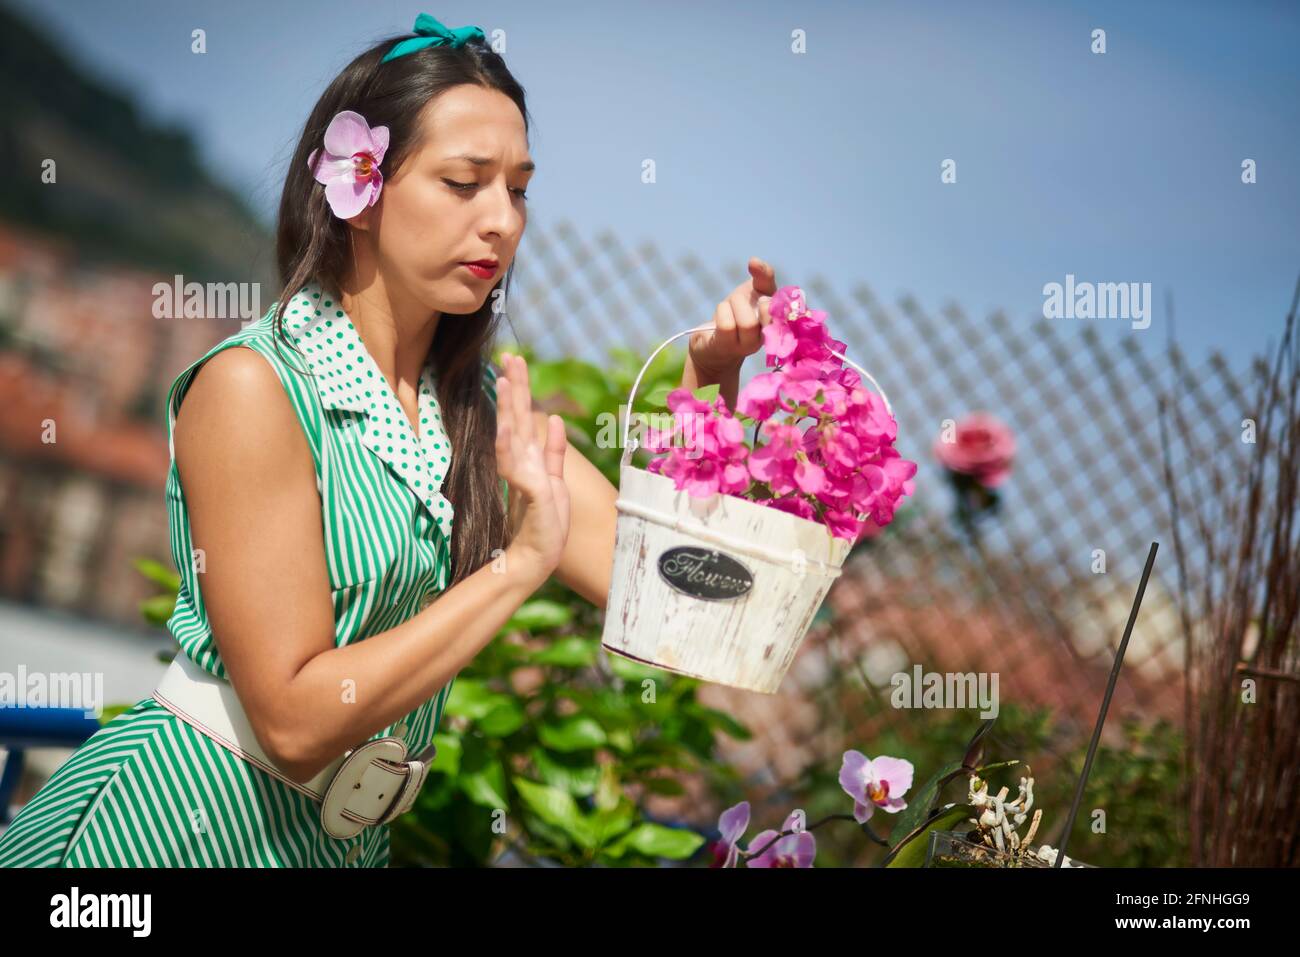 Jeune femme dans le jardin avec pot de fleurs Bougainvillea et une orchidée dans son oreille Banque D'Images